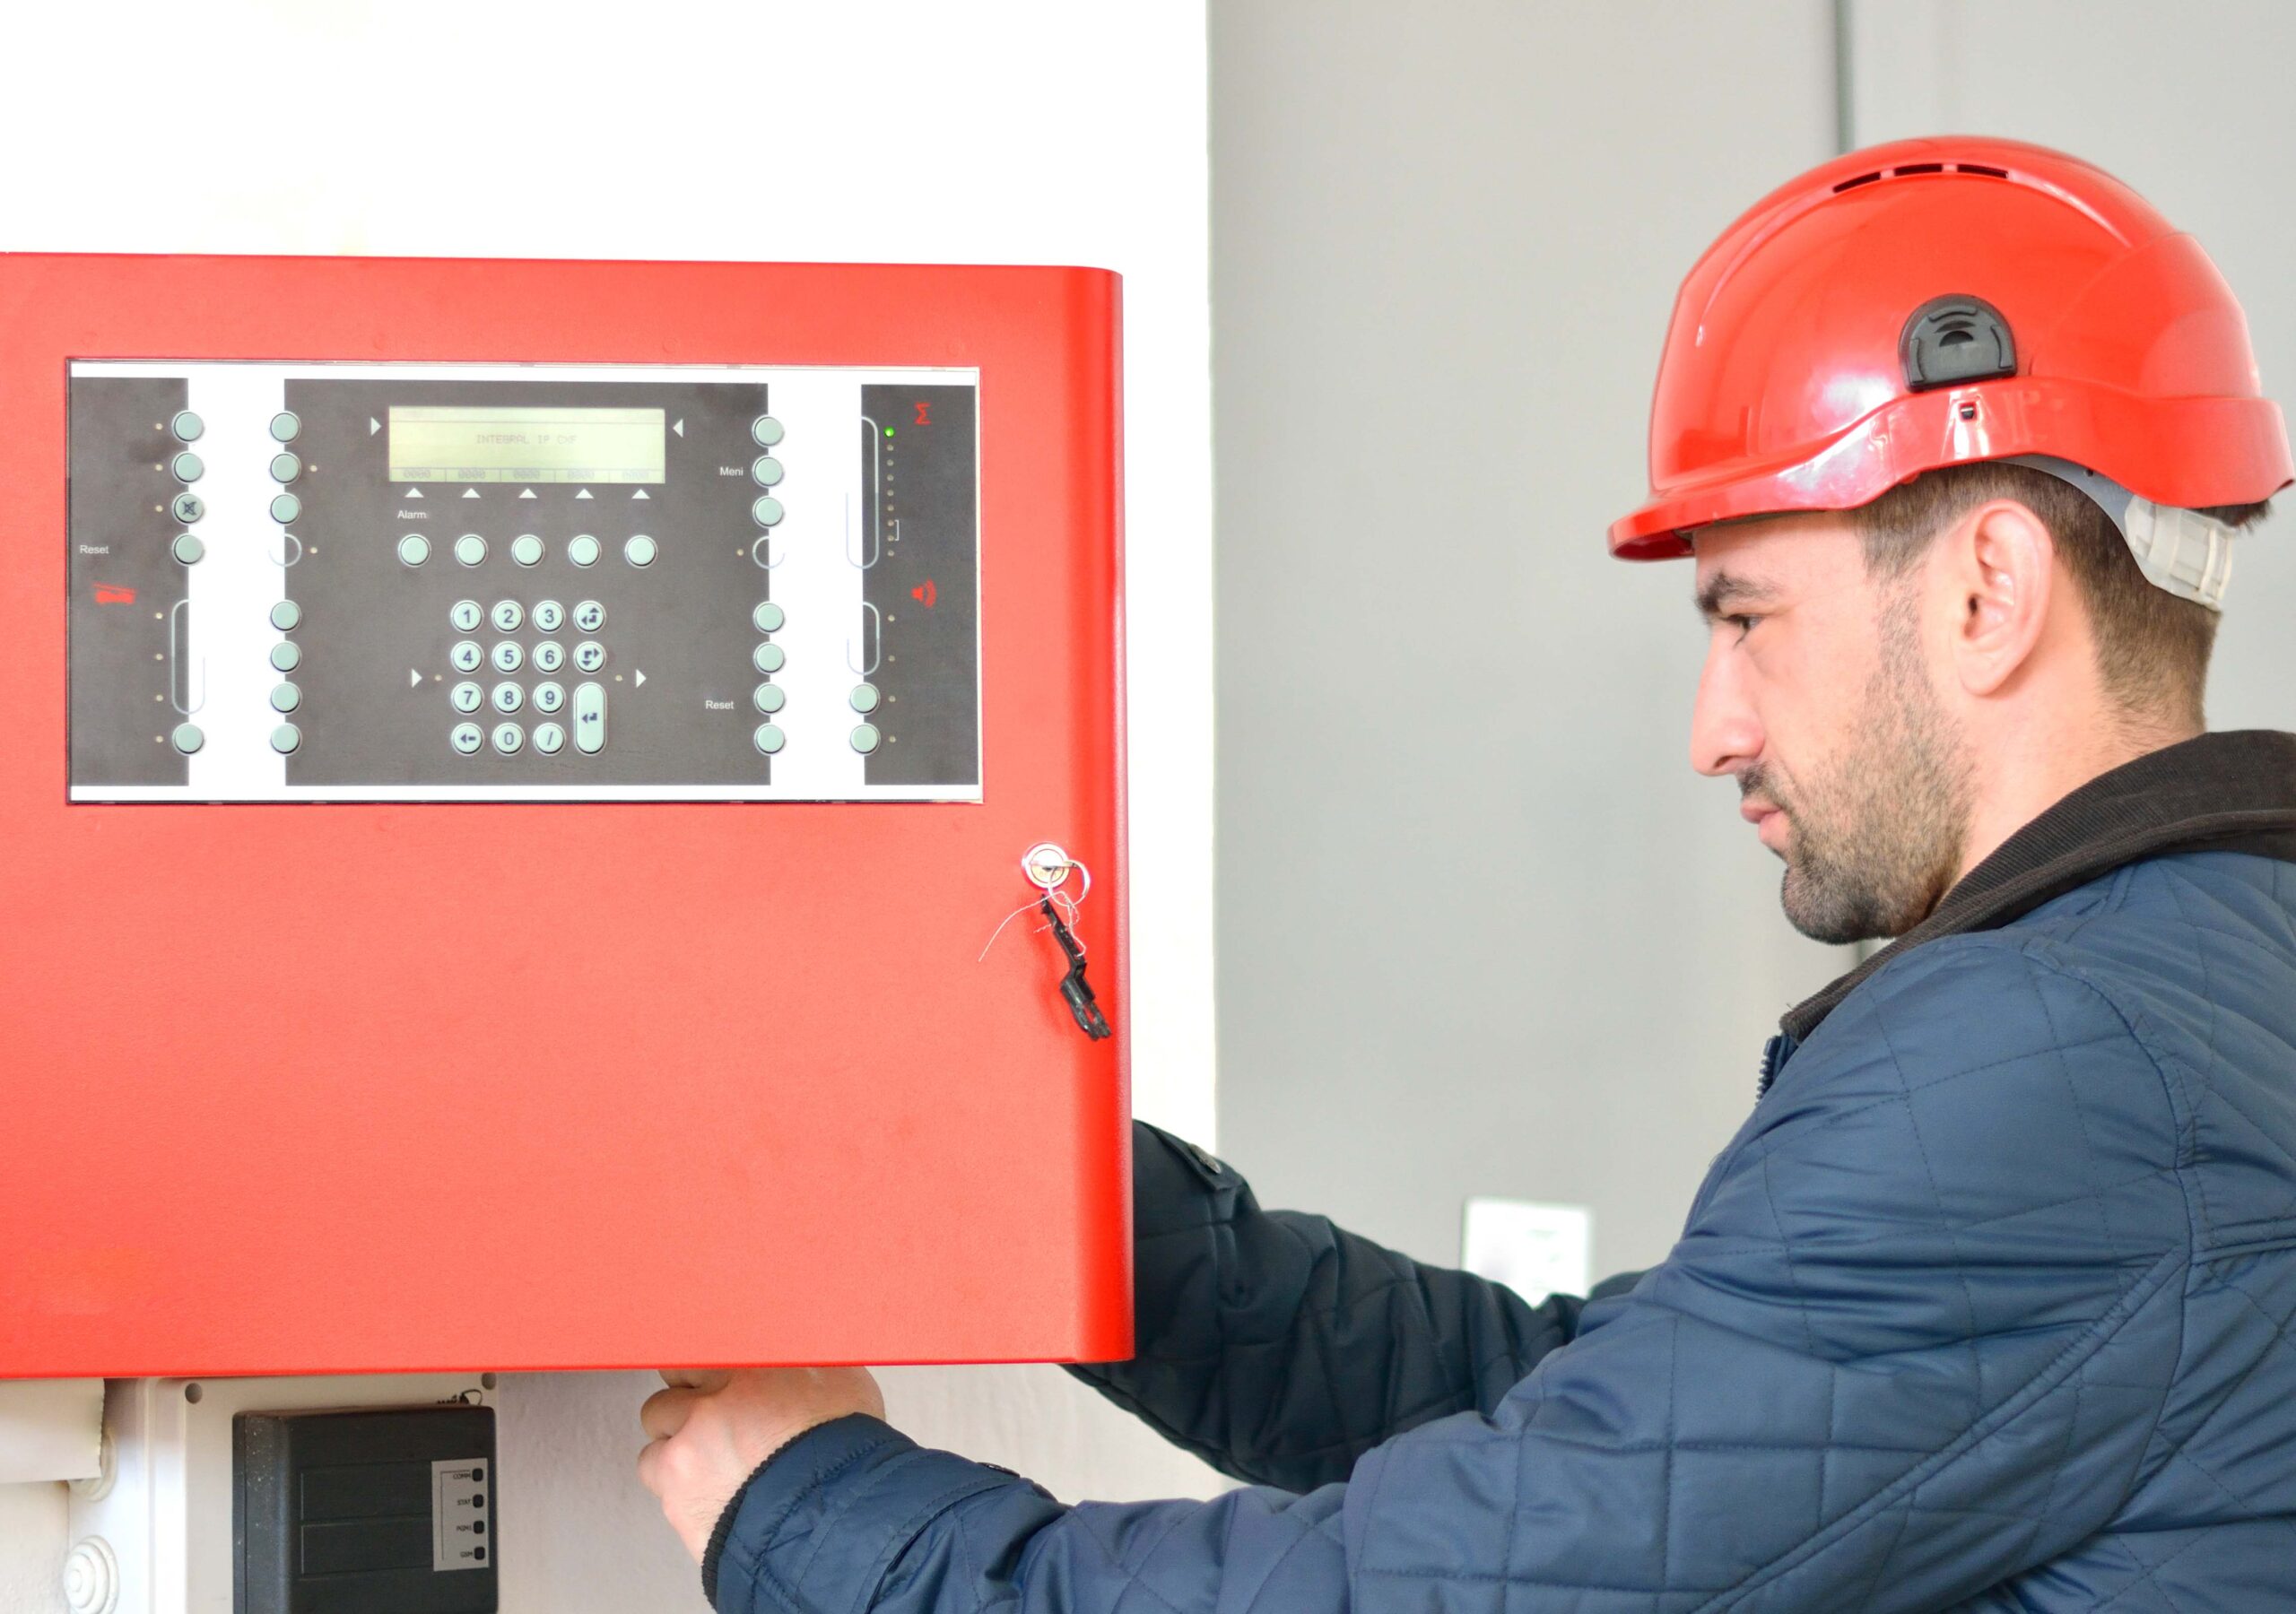 Производственный контроль пожарной безопасности